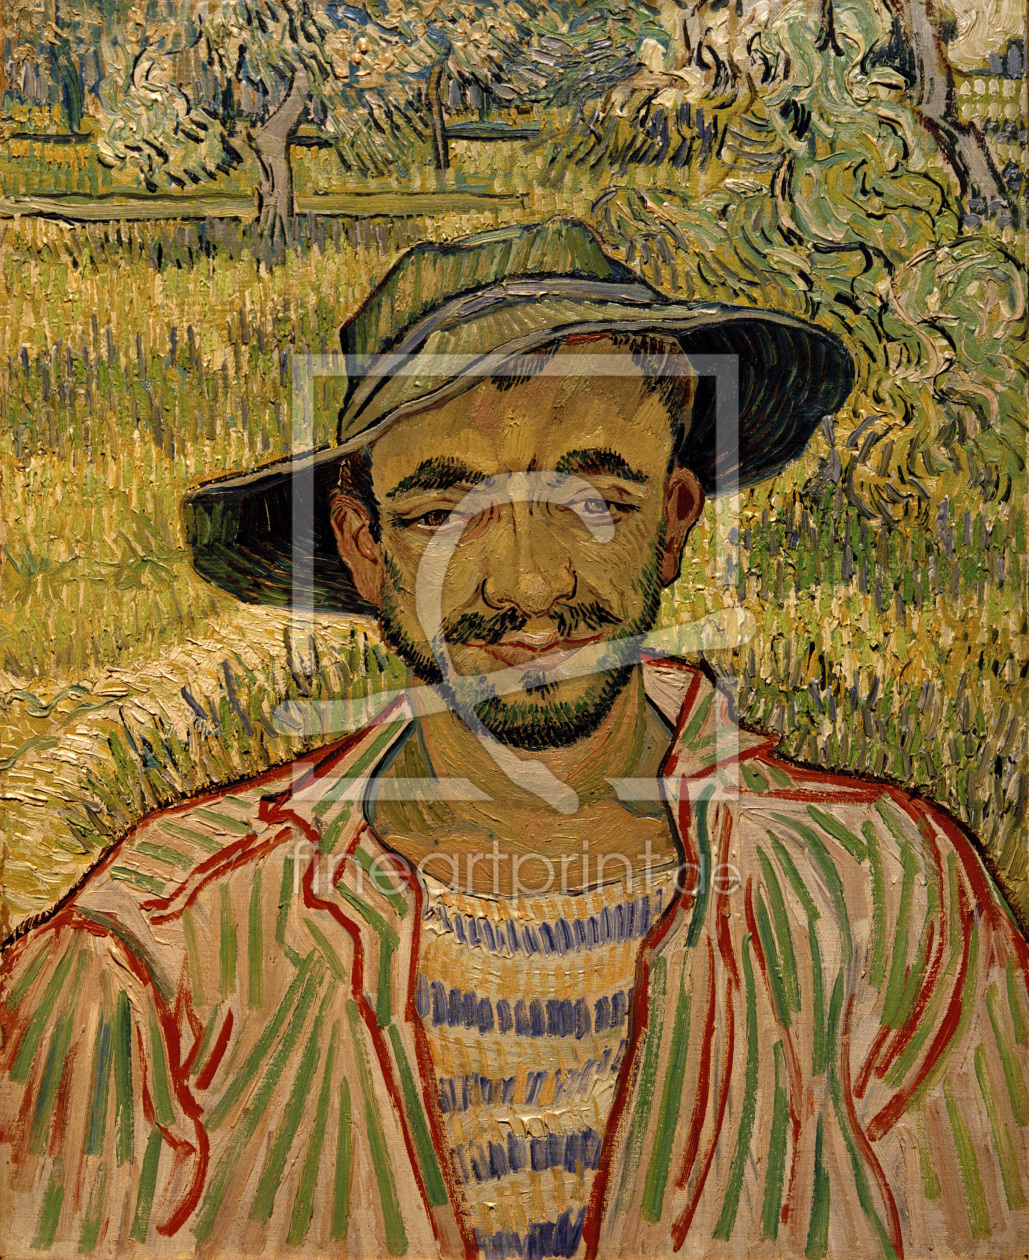 Bild-Nr.: 30003400 V.van Gogh, The Gardener / Paint./ 1889 erstellt von van Gogh, Vincent